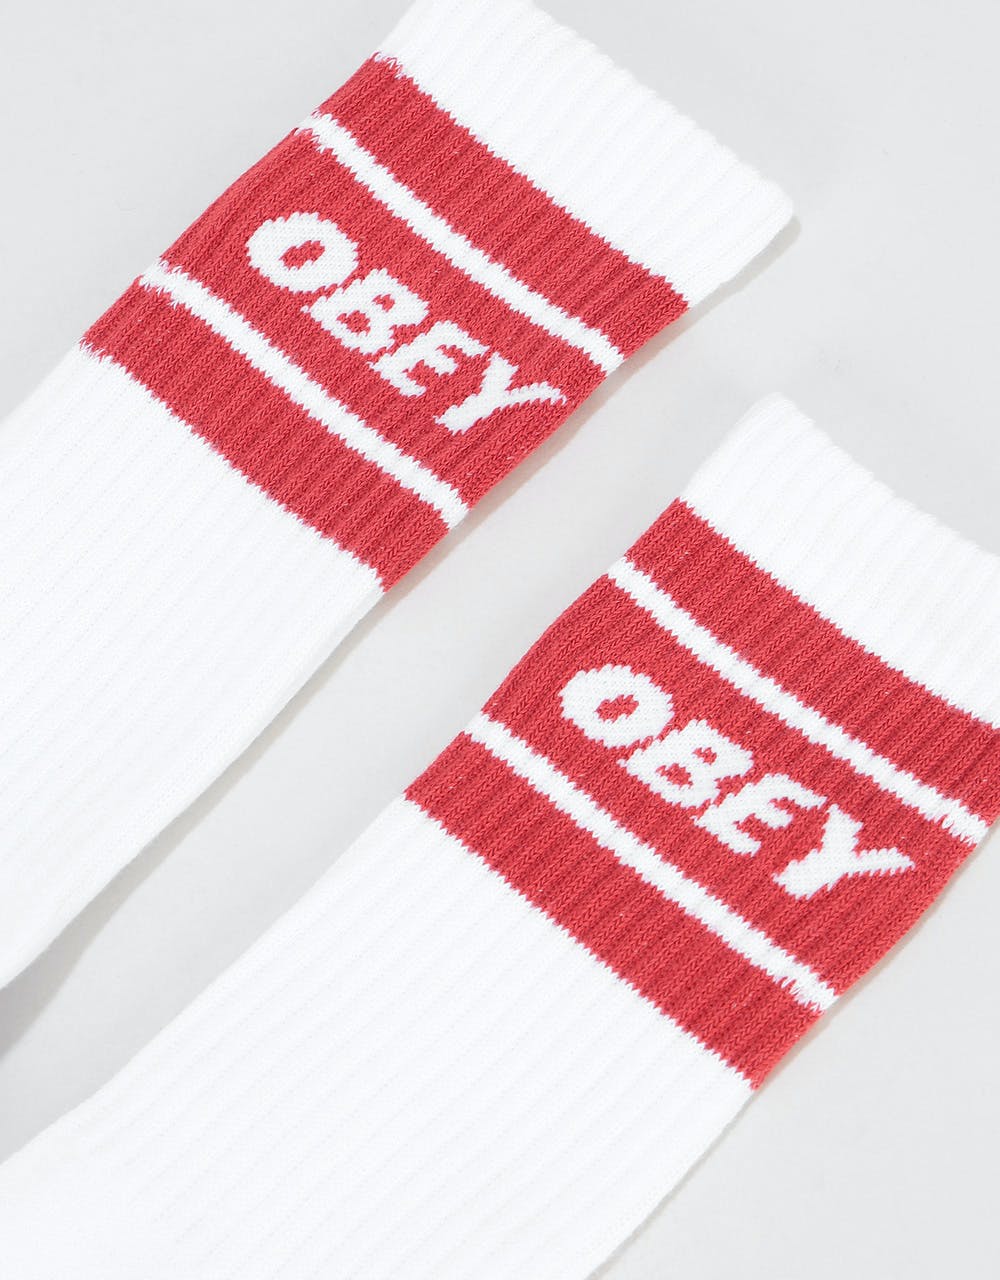 Obey Cooper II Socks - White/Brick